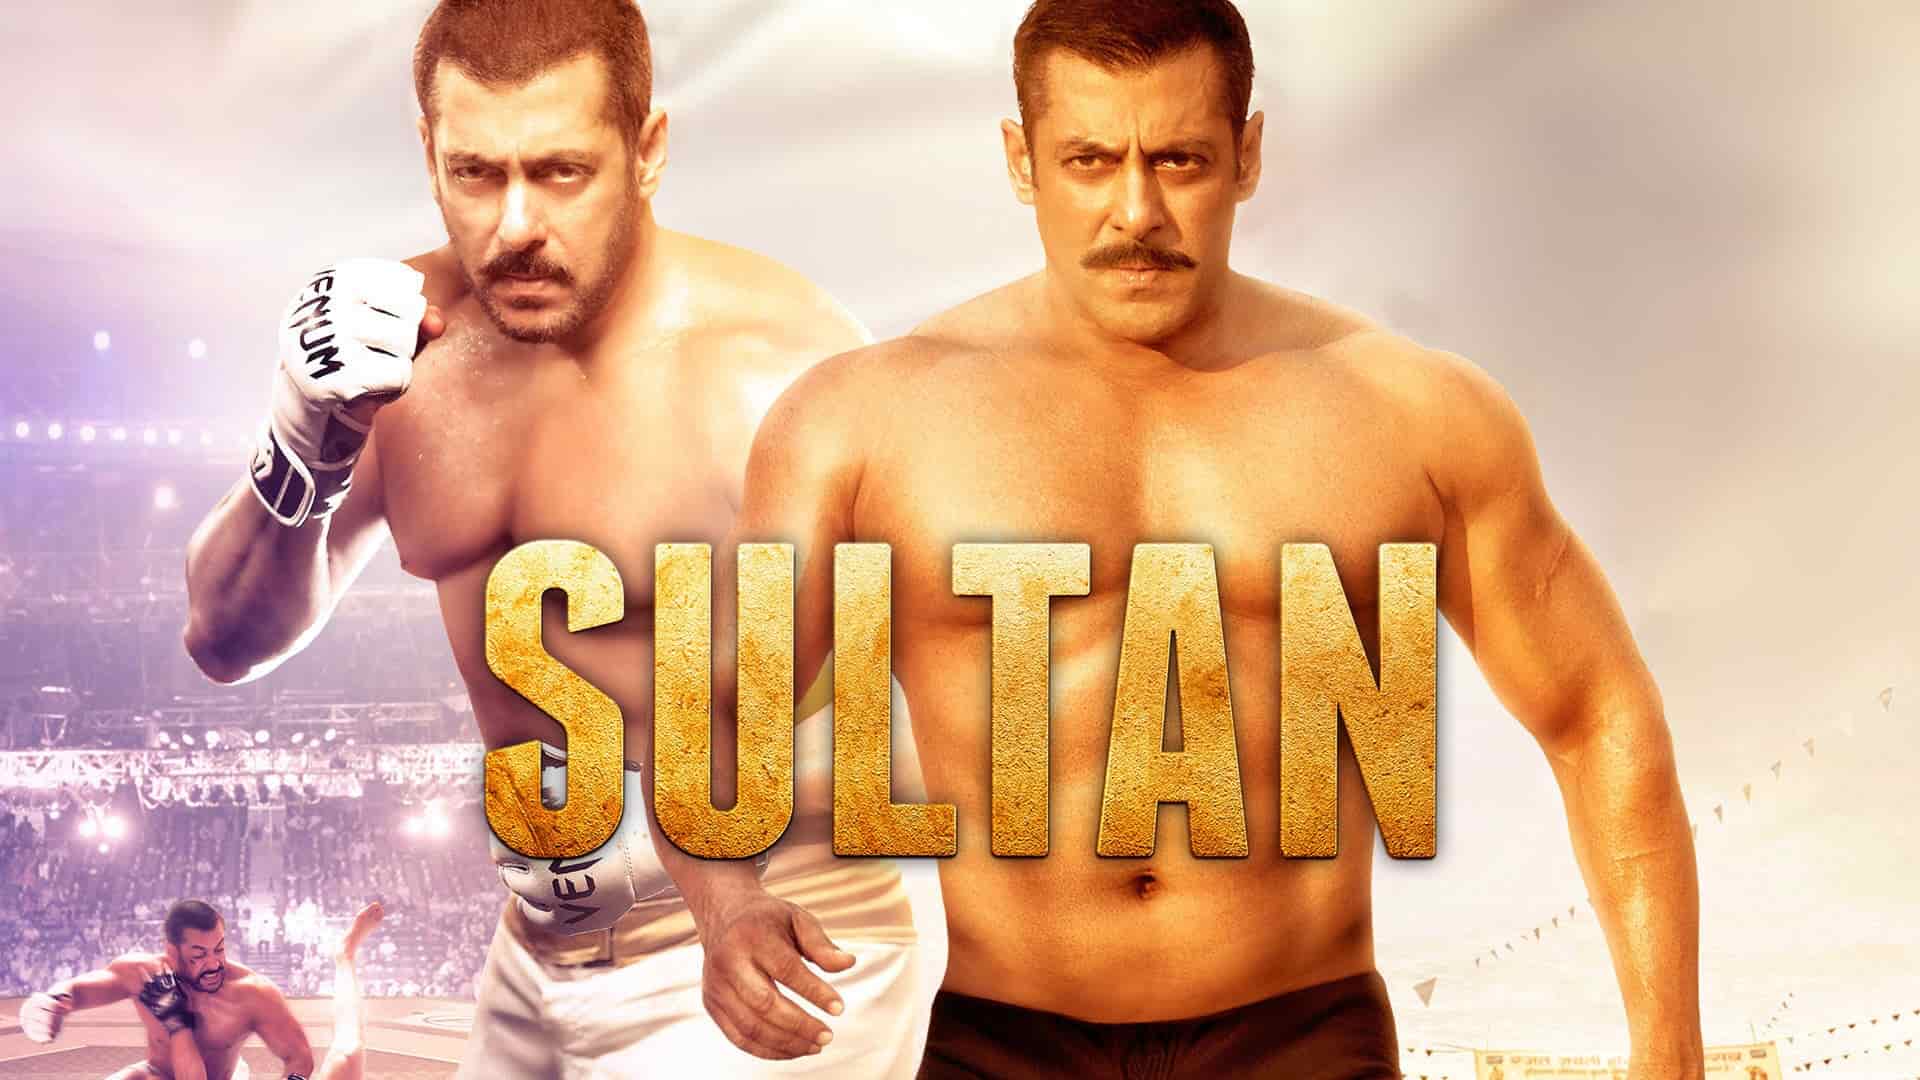 دانلود فیلم Sultan 2016